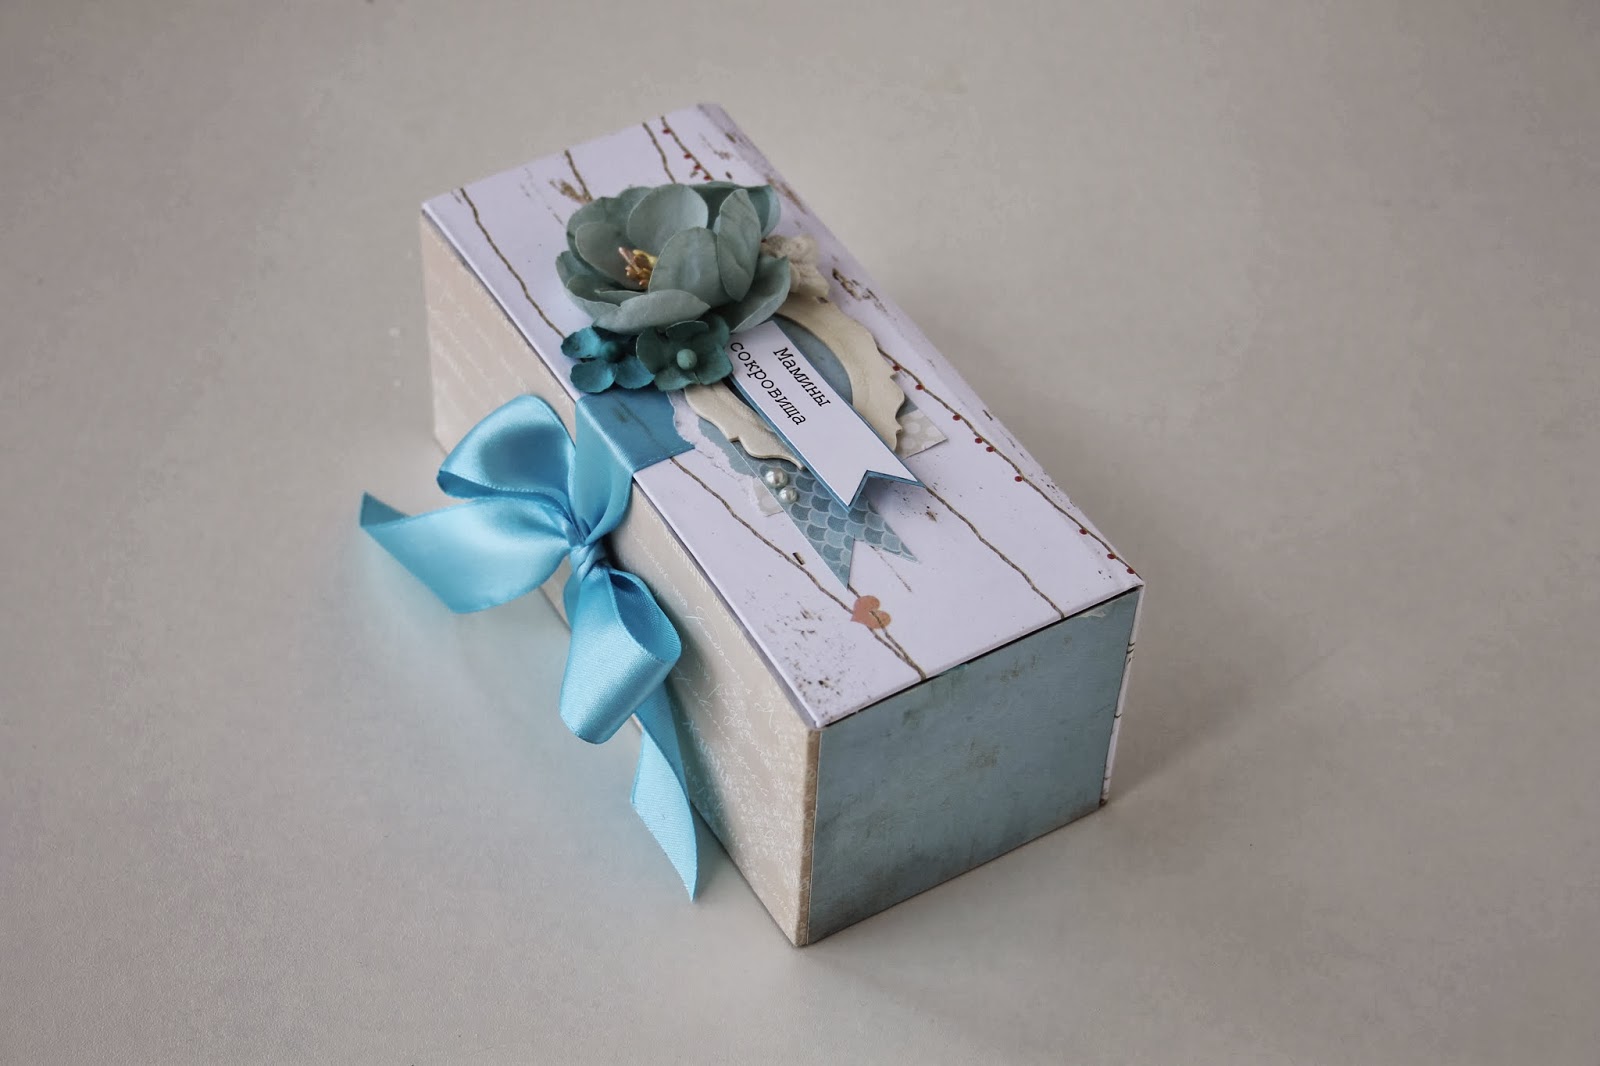 Сделать коробку на день рождения. Сделать коробку с бабочками. Как красиво можно оформить коробку карандашами. Как собрать первый локон коробочку. ДОУ сделать коробочки своими руками для секретиков.